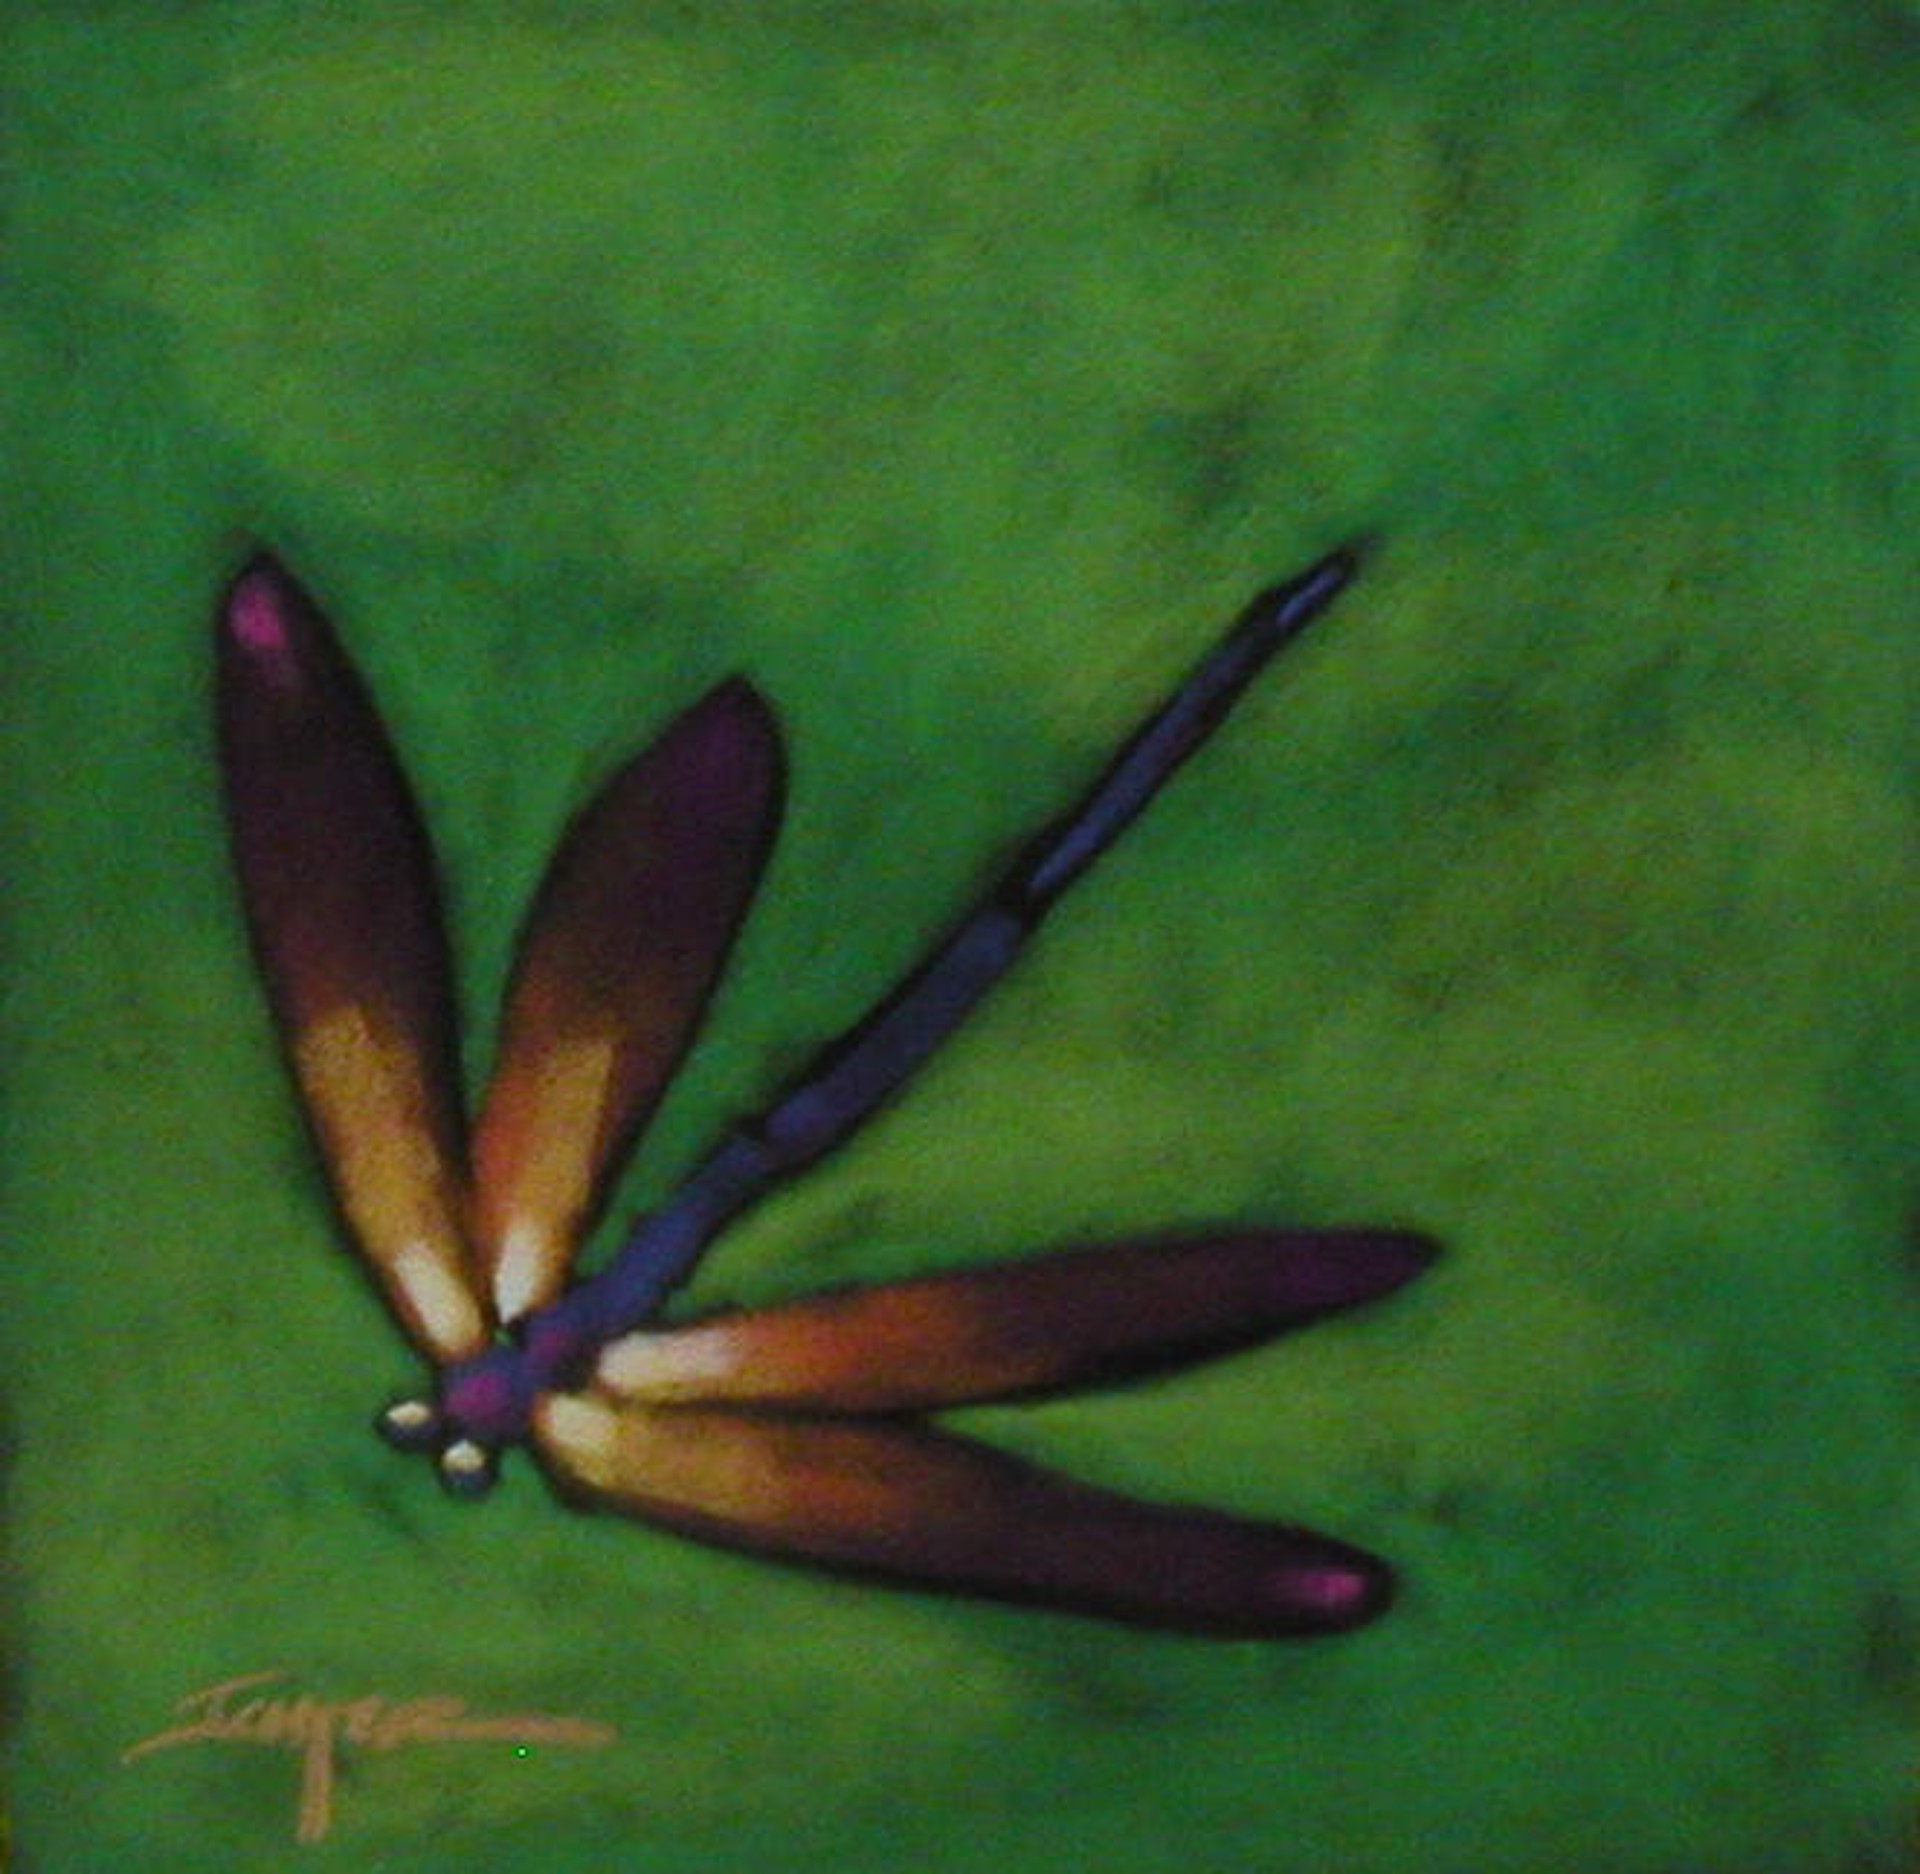 Dragonfly by Robert Ichter